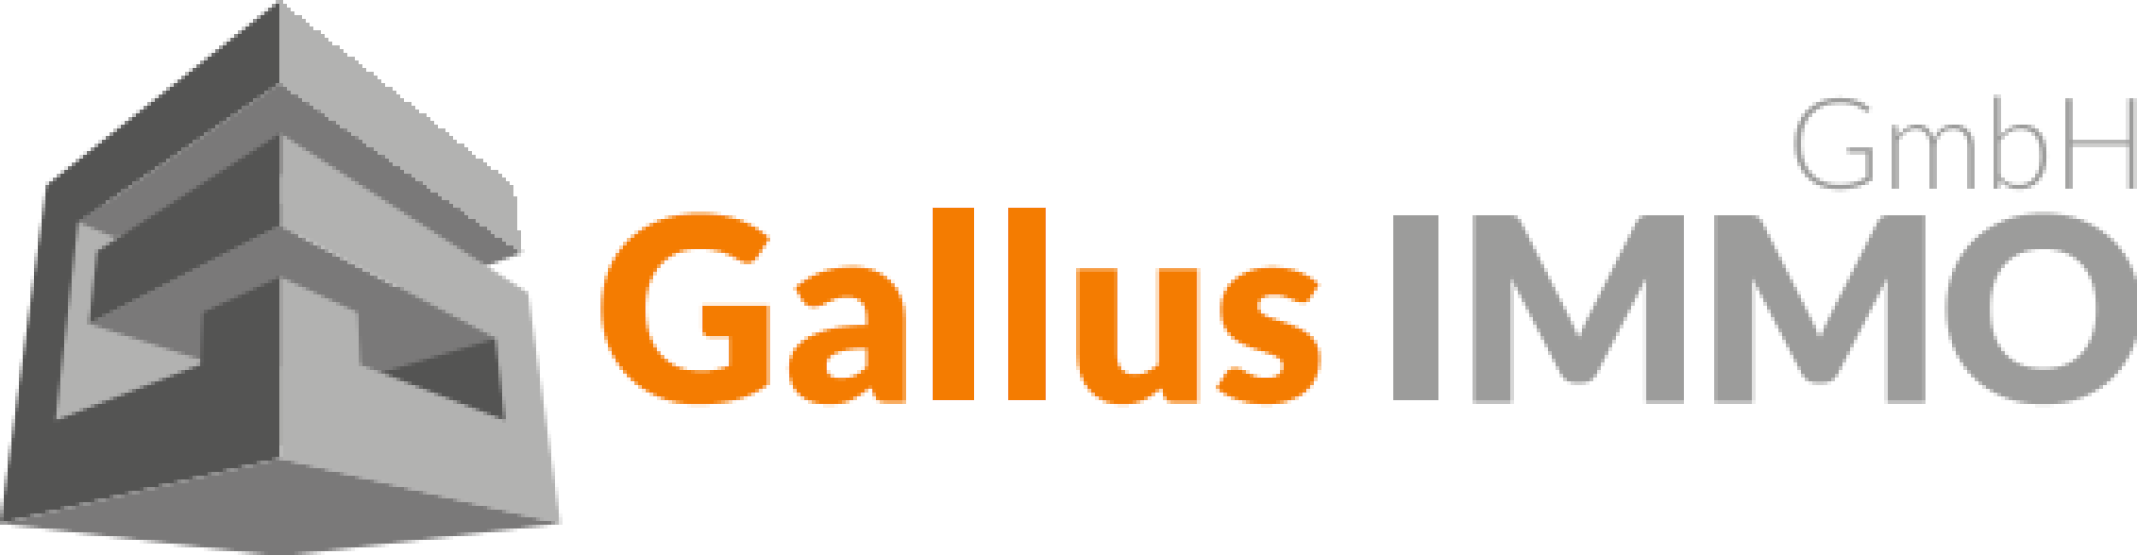 Gallus IMMO GmbH